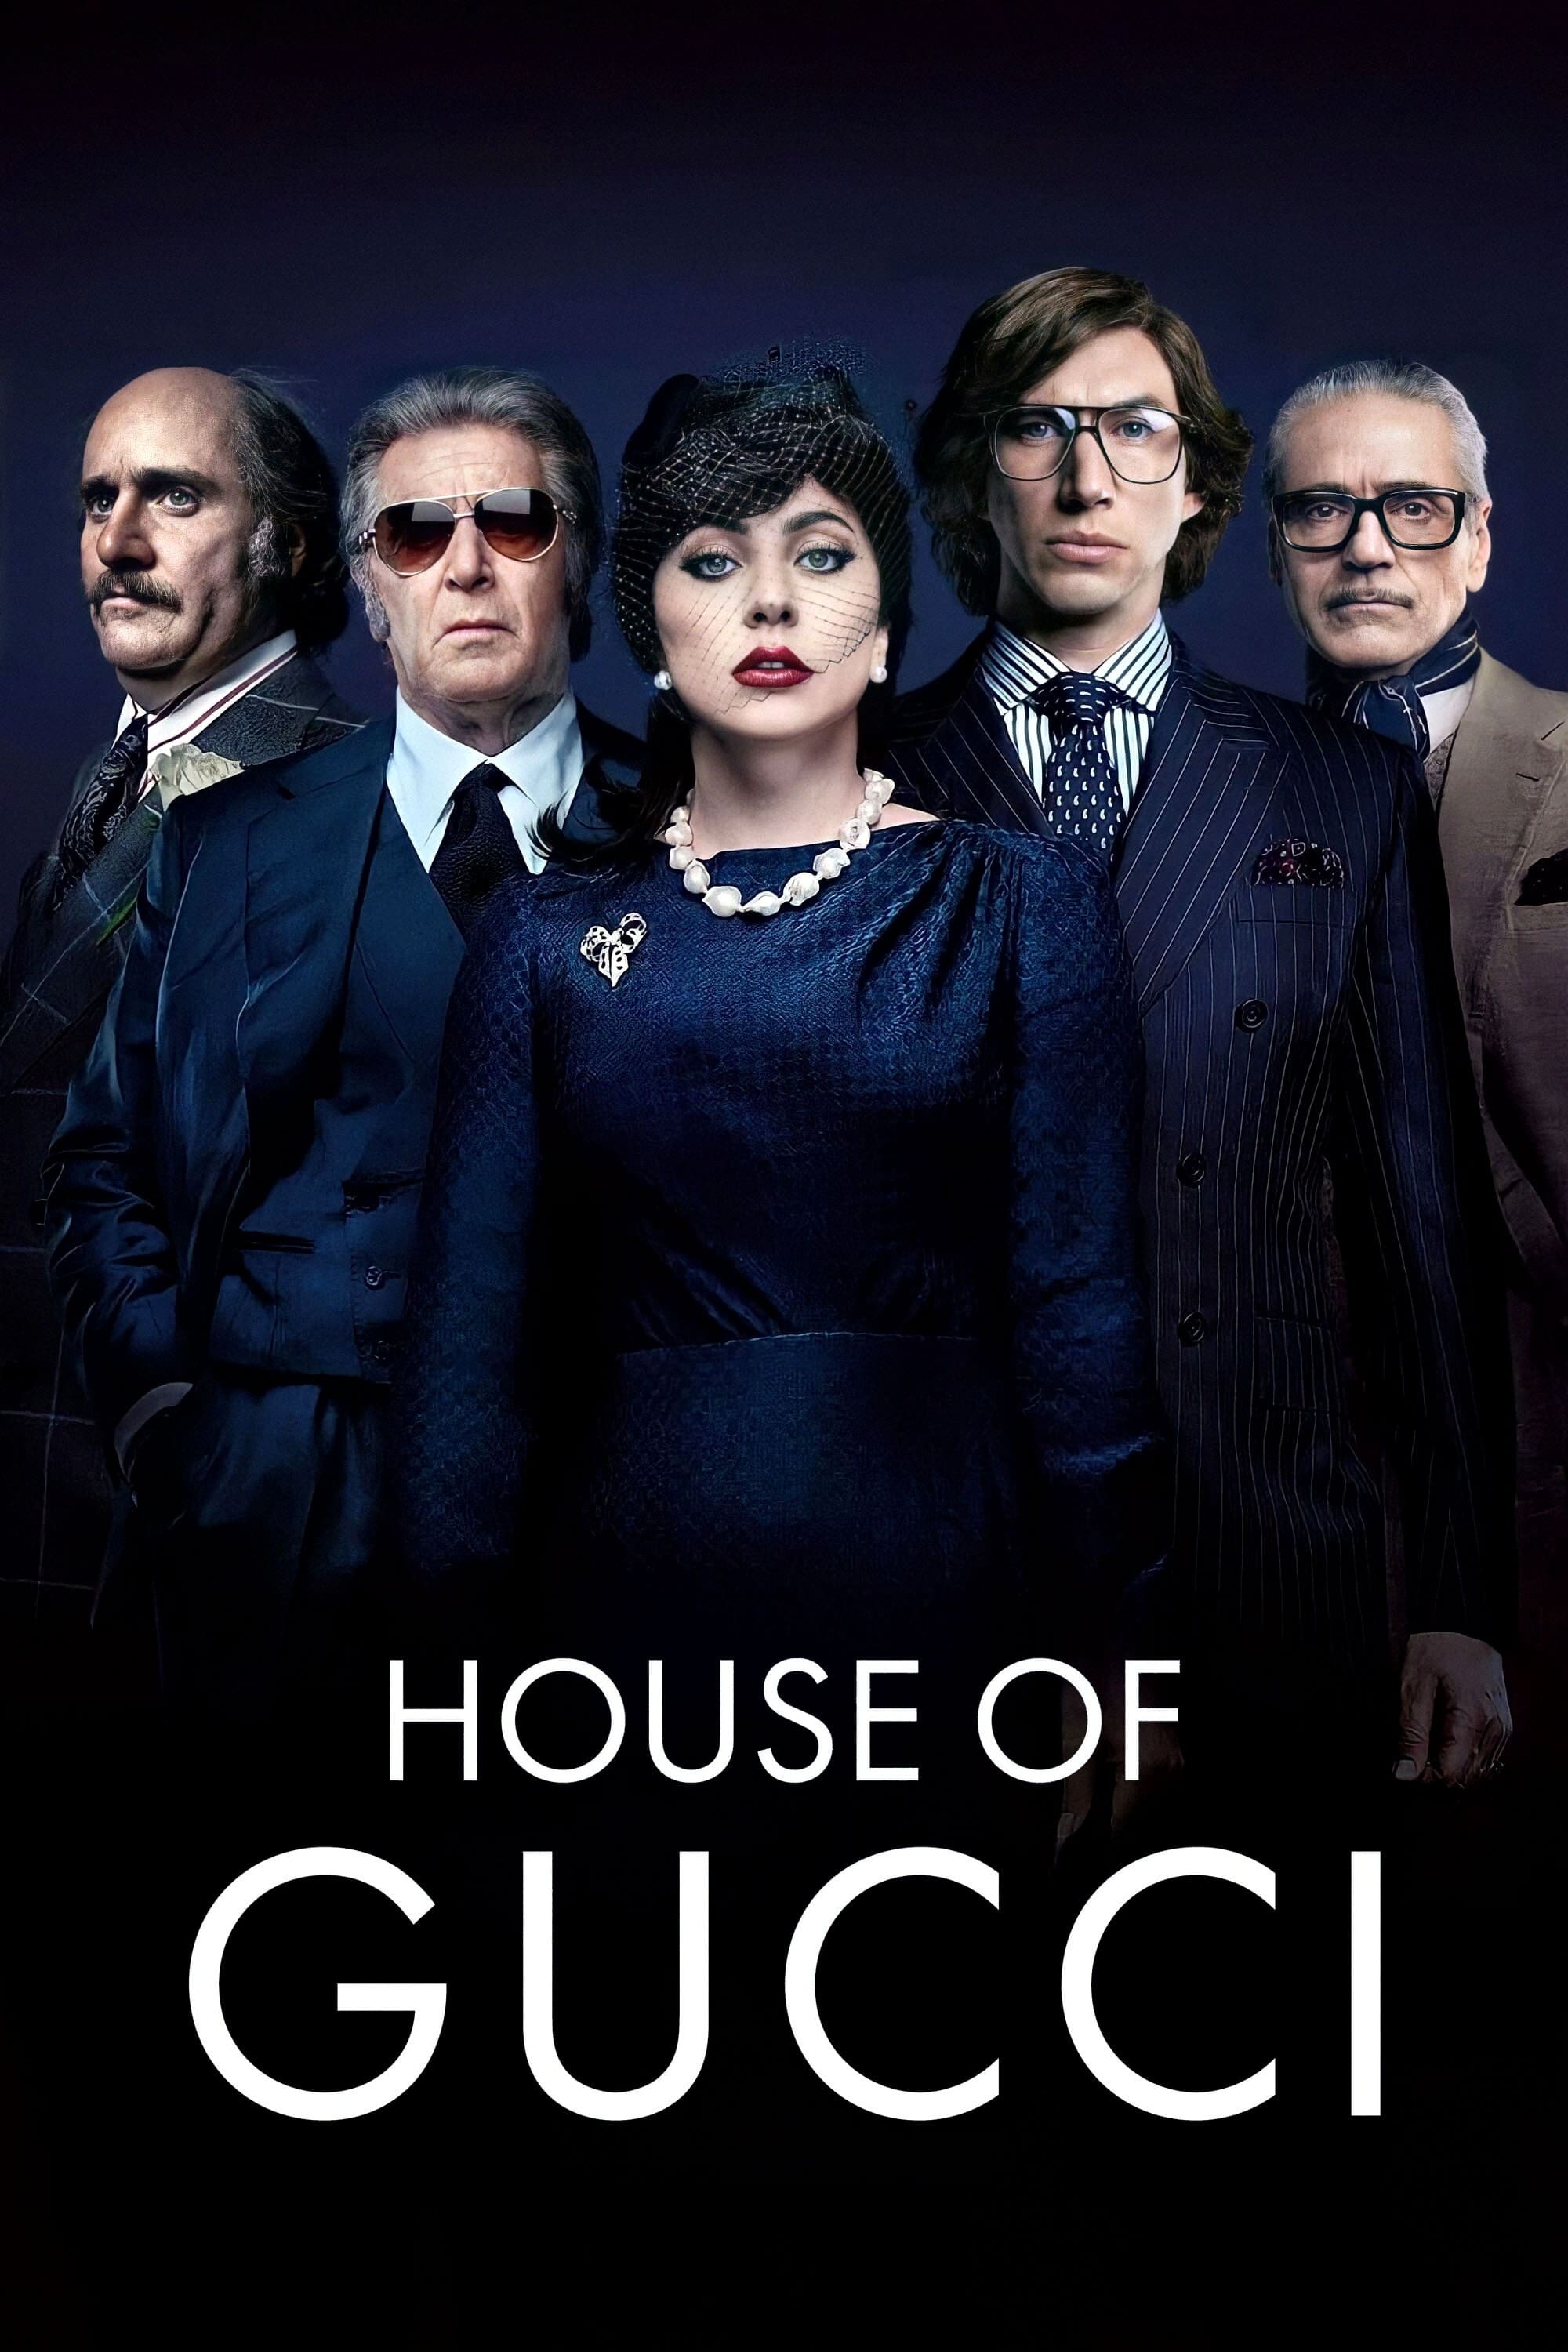 La casa Gucci (2021)